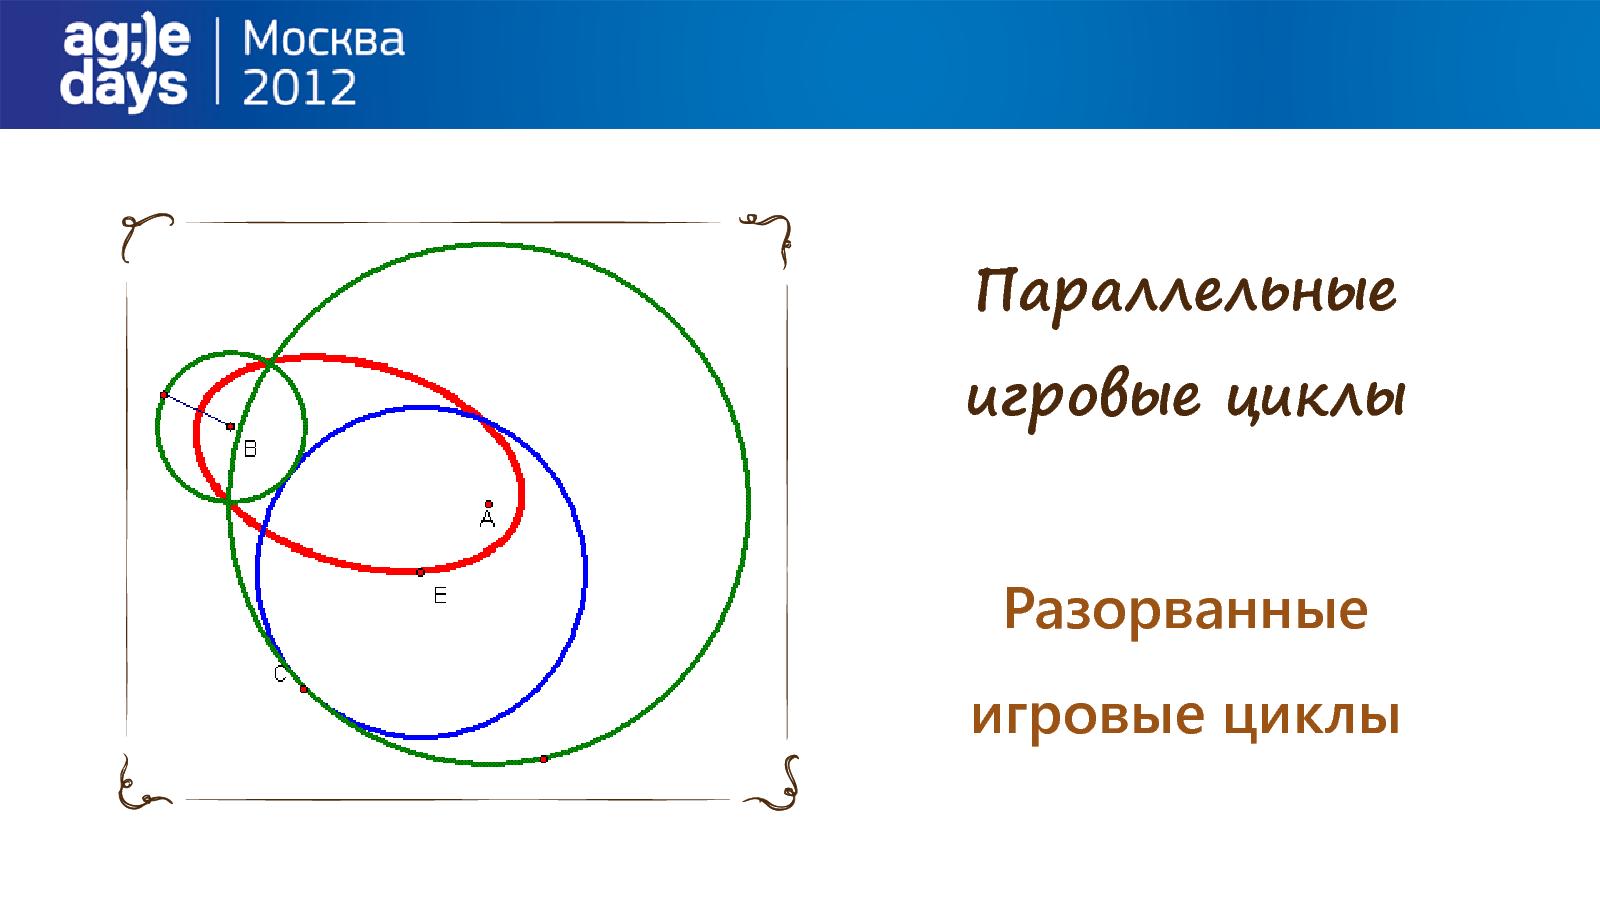 Файл:Игрофикация на практике. Кейс LinguaLeo.ru (Илья Курылев, AgileDays-2014).pdf